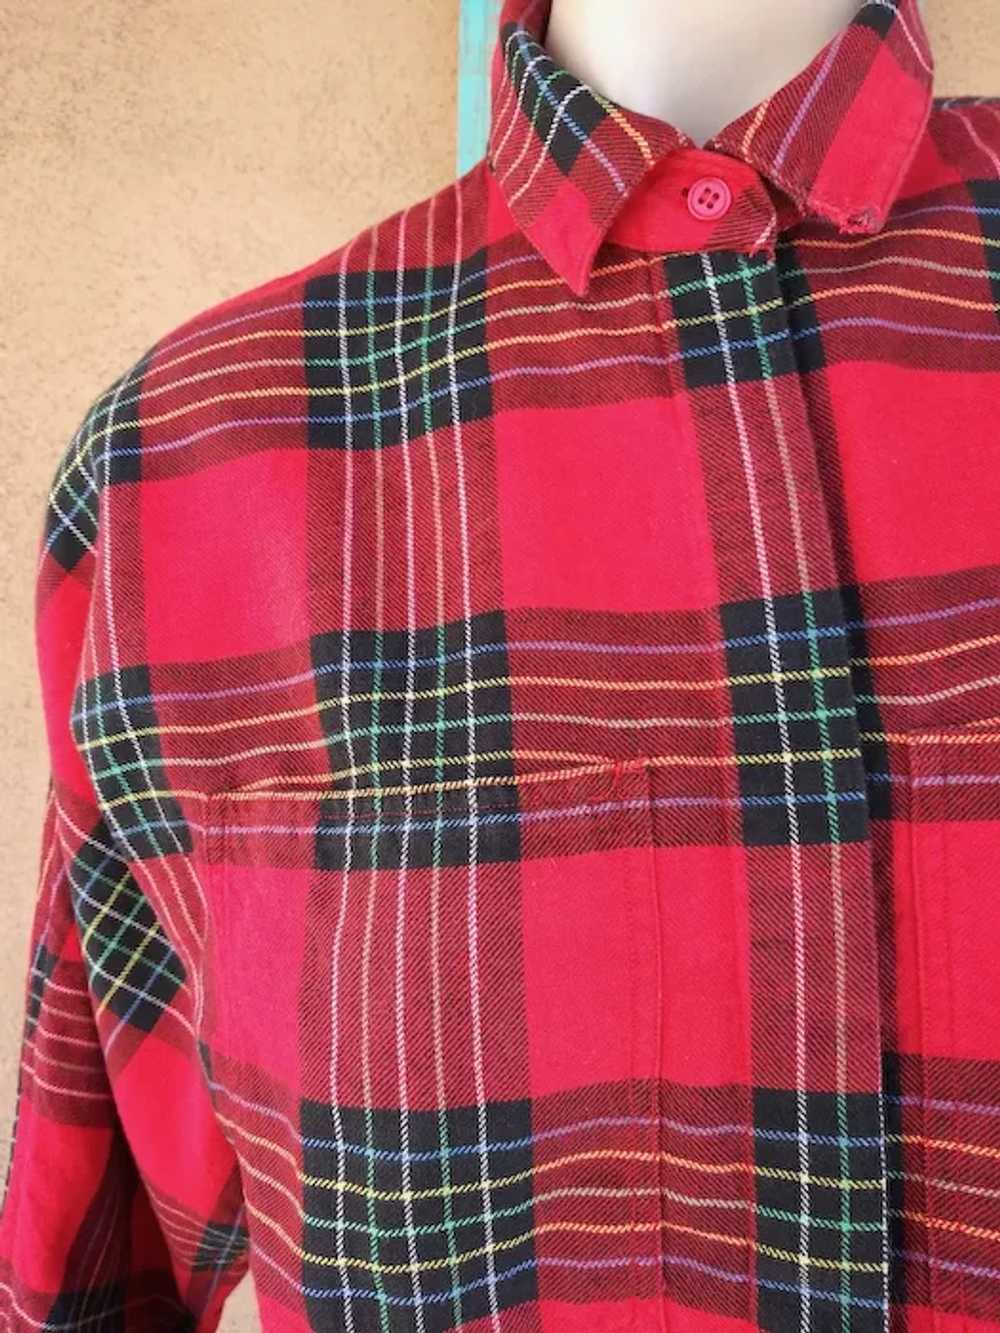 1980s Red Plaid Cotton Flannel Shirt Blouse Sz S M - image 2